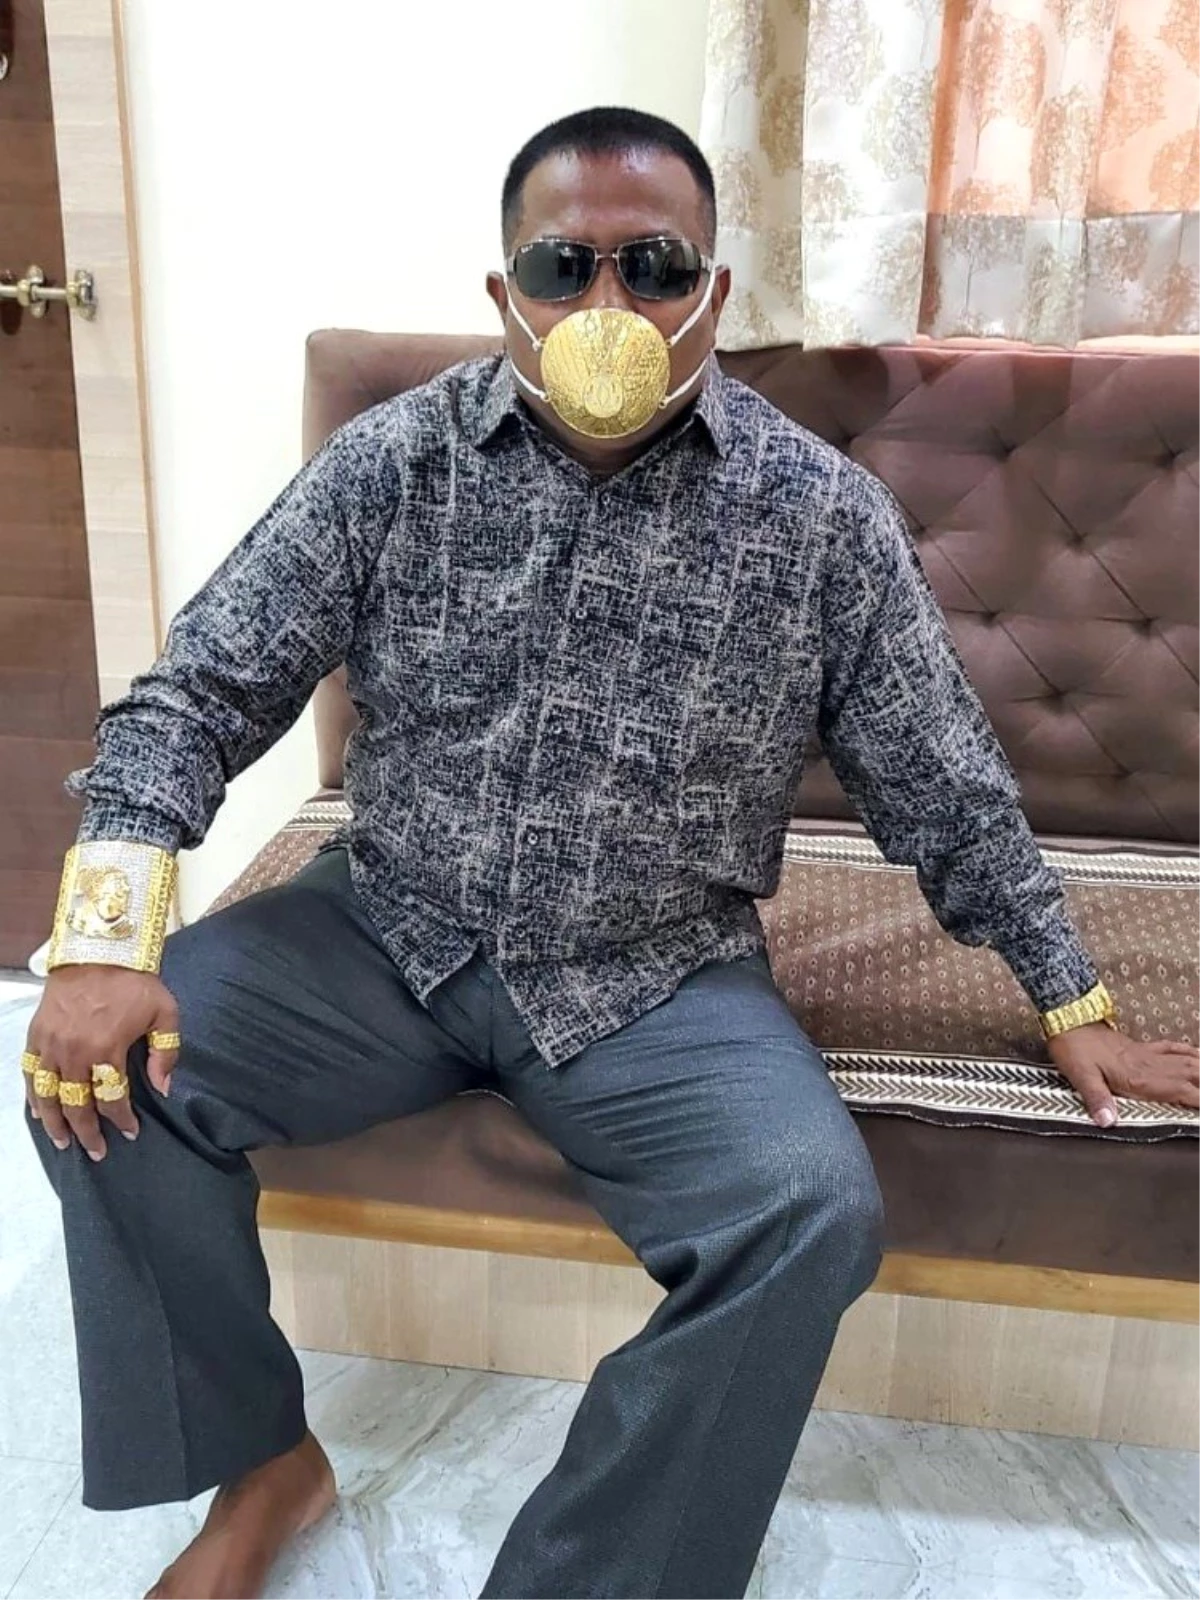 Son Dakika: Hindistanlı iş adamı korona virüse karşı altın maske takıyor